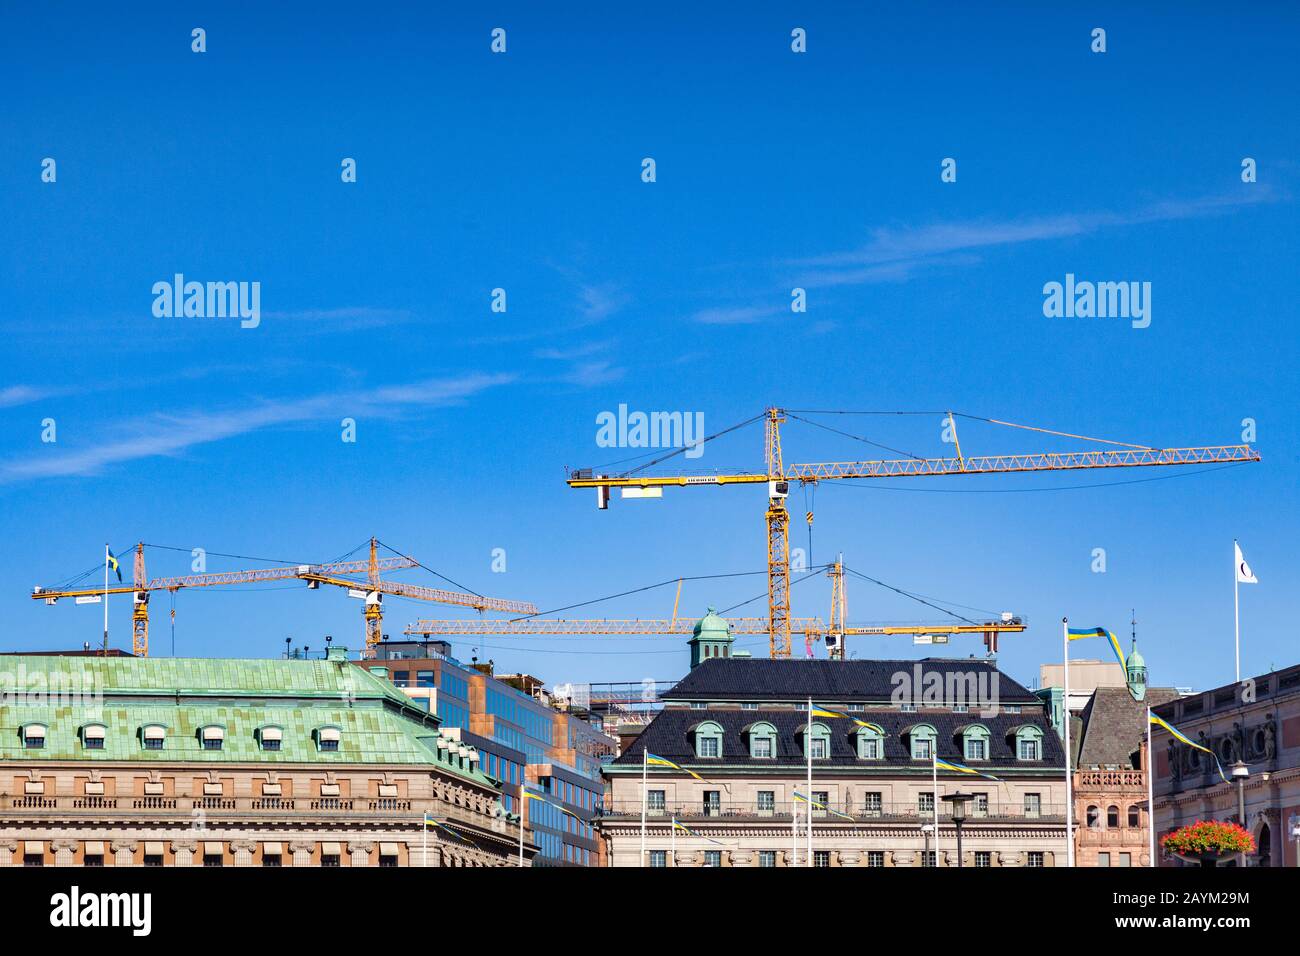 16 settembre 2018: Stoccolma, Svezia - Cranes che si affaccia sui tetti storici della città vecchia. Foto Stock